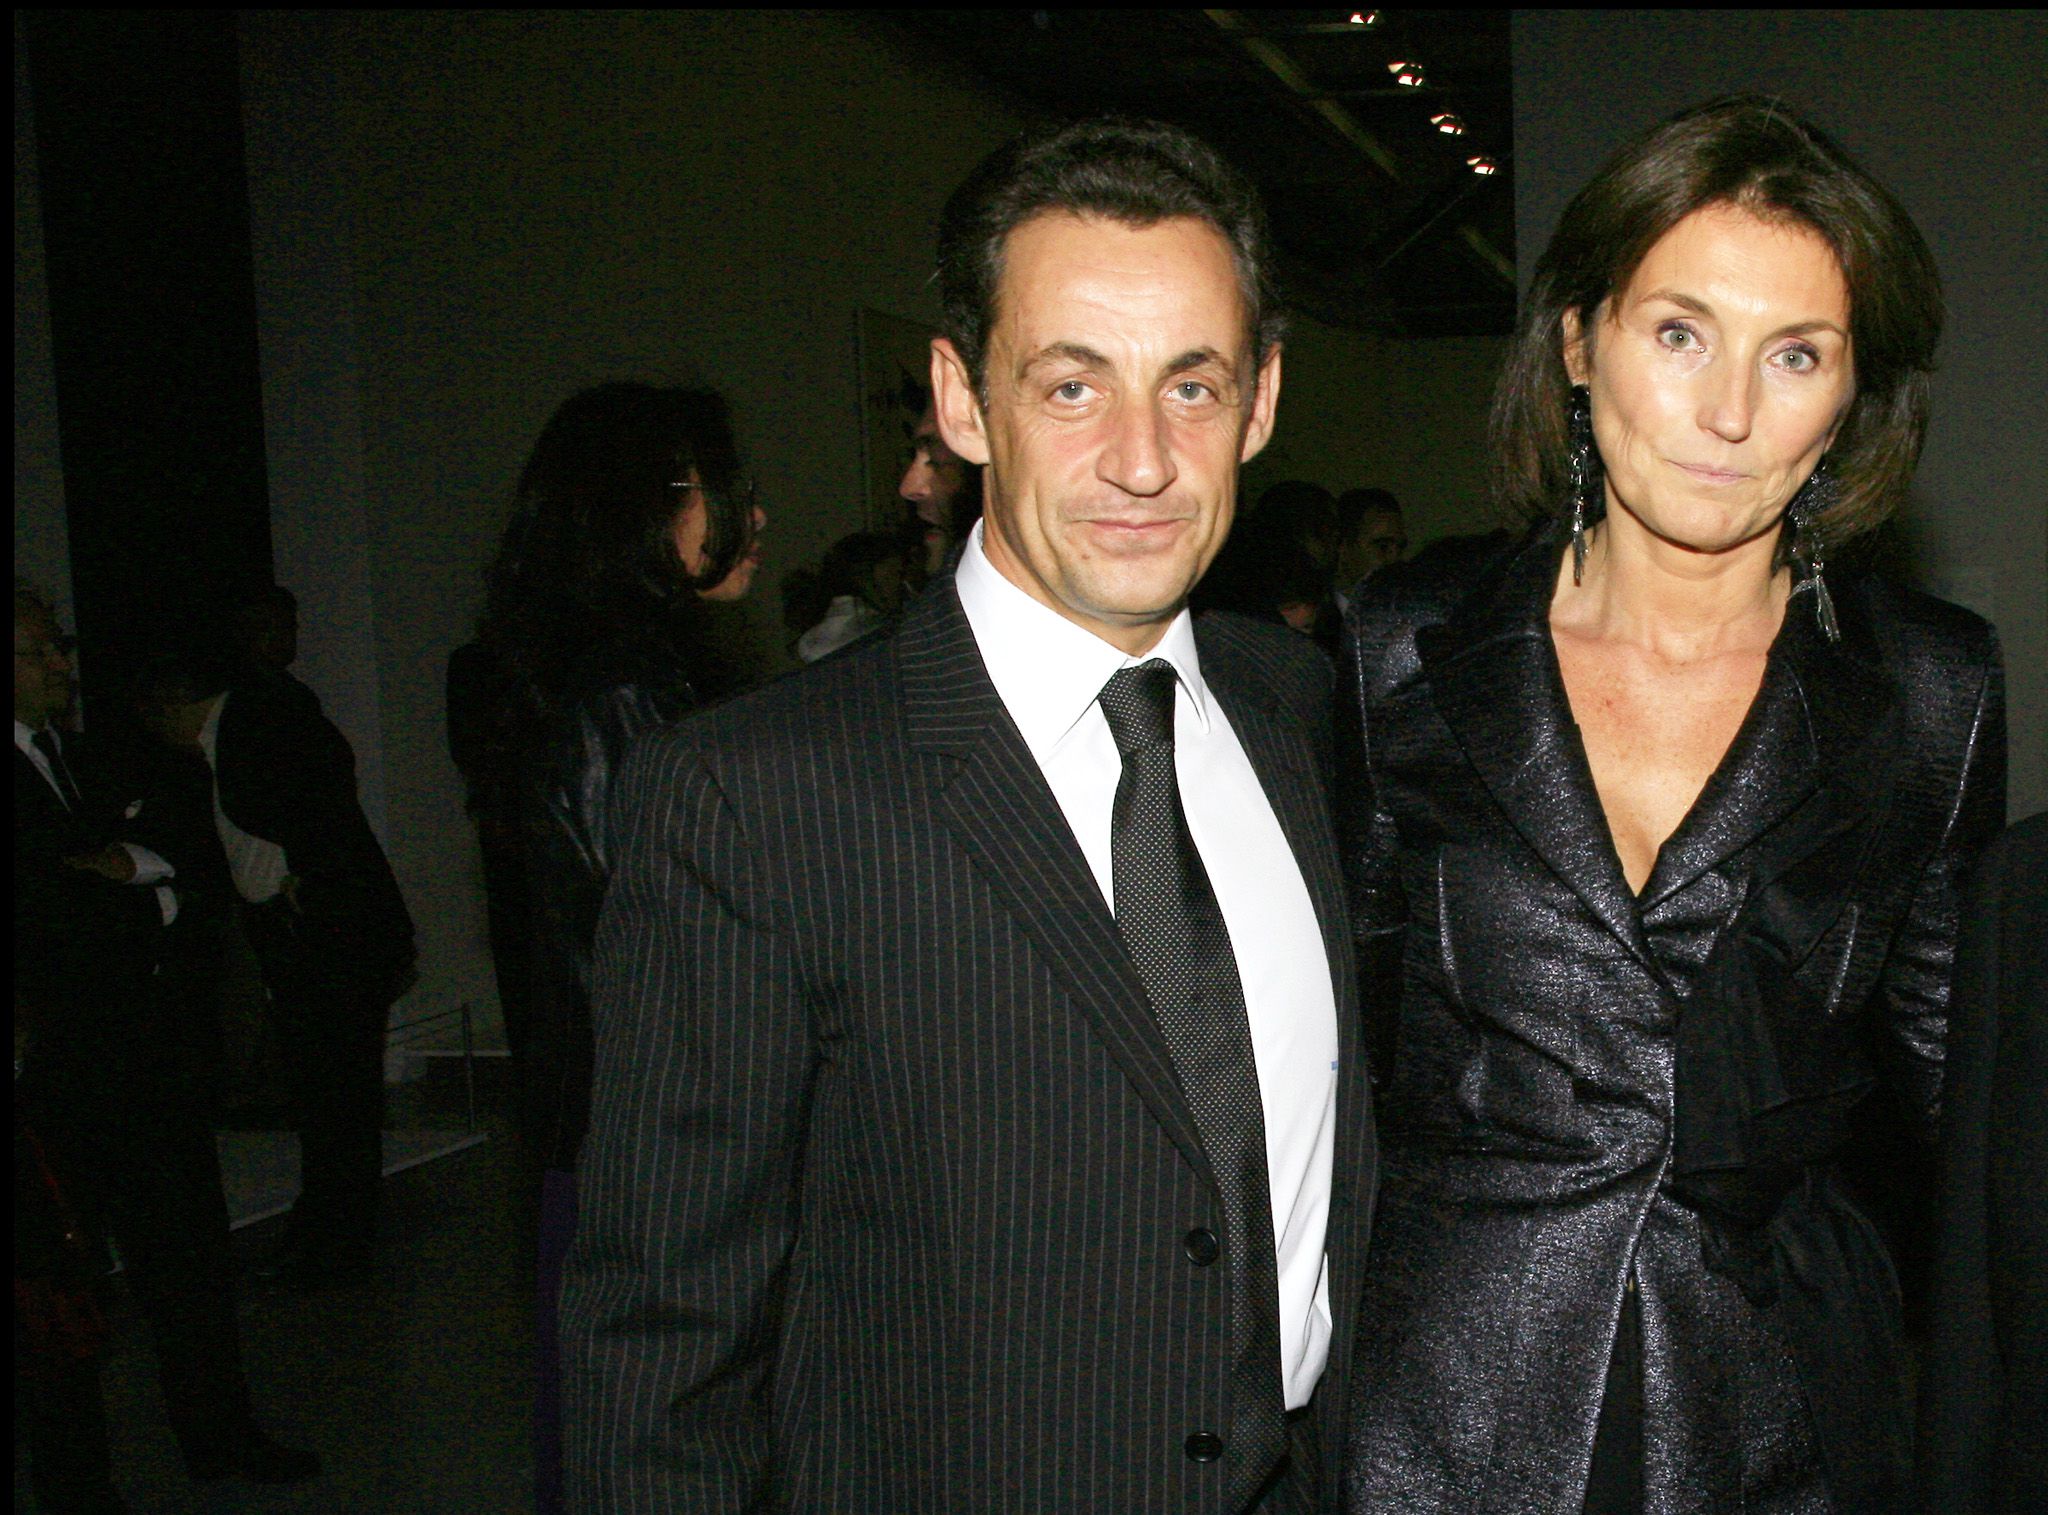 Nicolas Sarkozy évoque son divorce avec Cécilia Attias : "Je l'avais craint, j'avais tort"